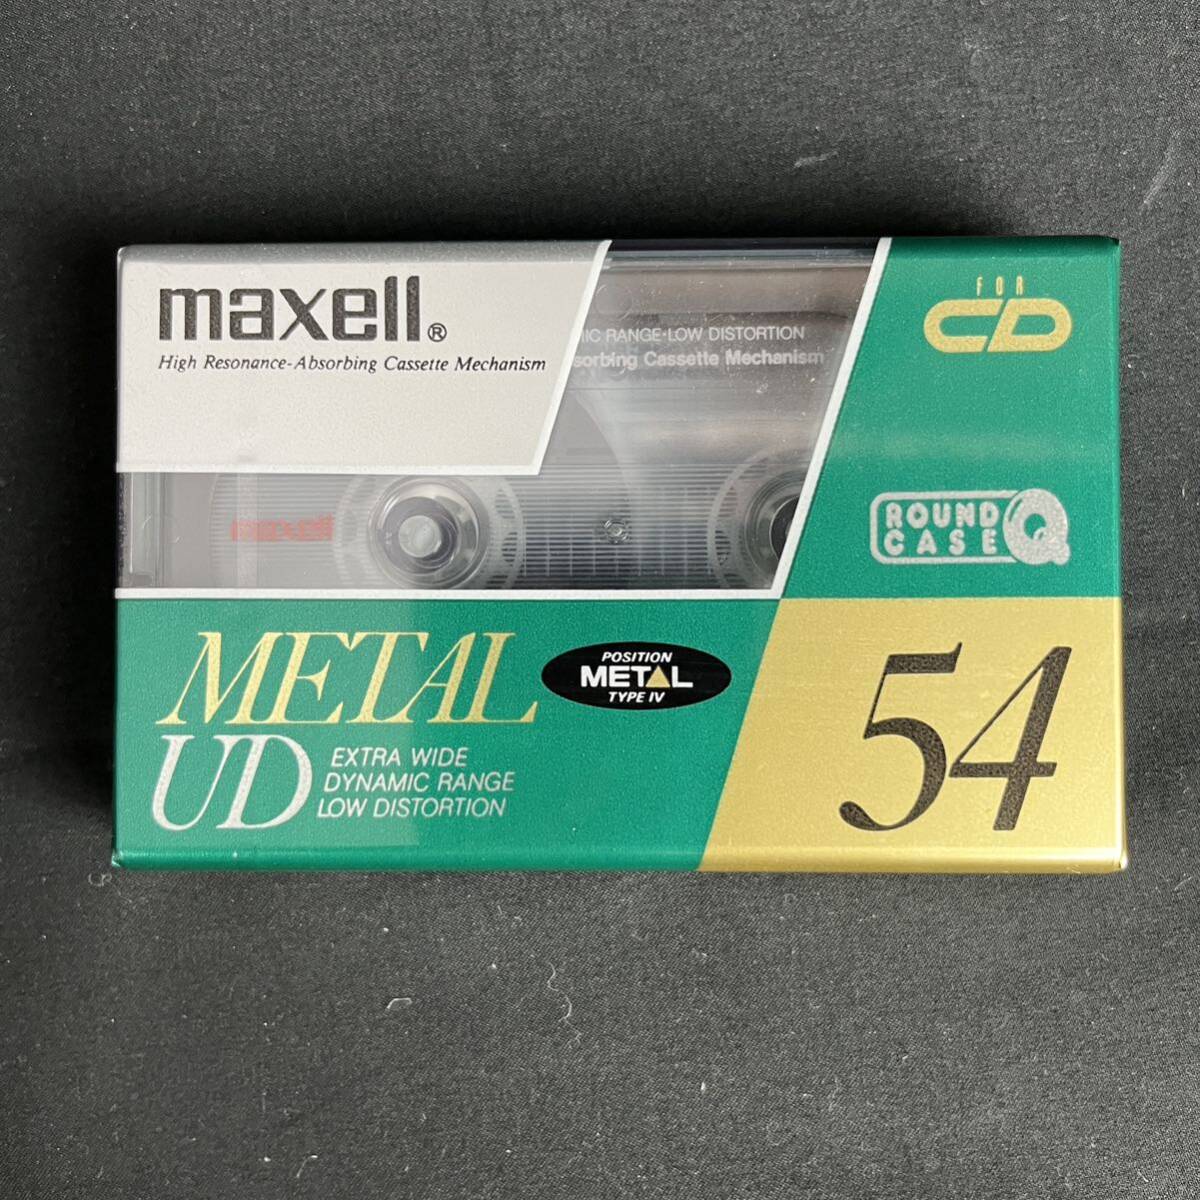 未開封 maxell ①UDⅡ-S 90 ②METAL UD 54 ハイポジ カセットテープ 2個セット マクセル_画像5